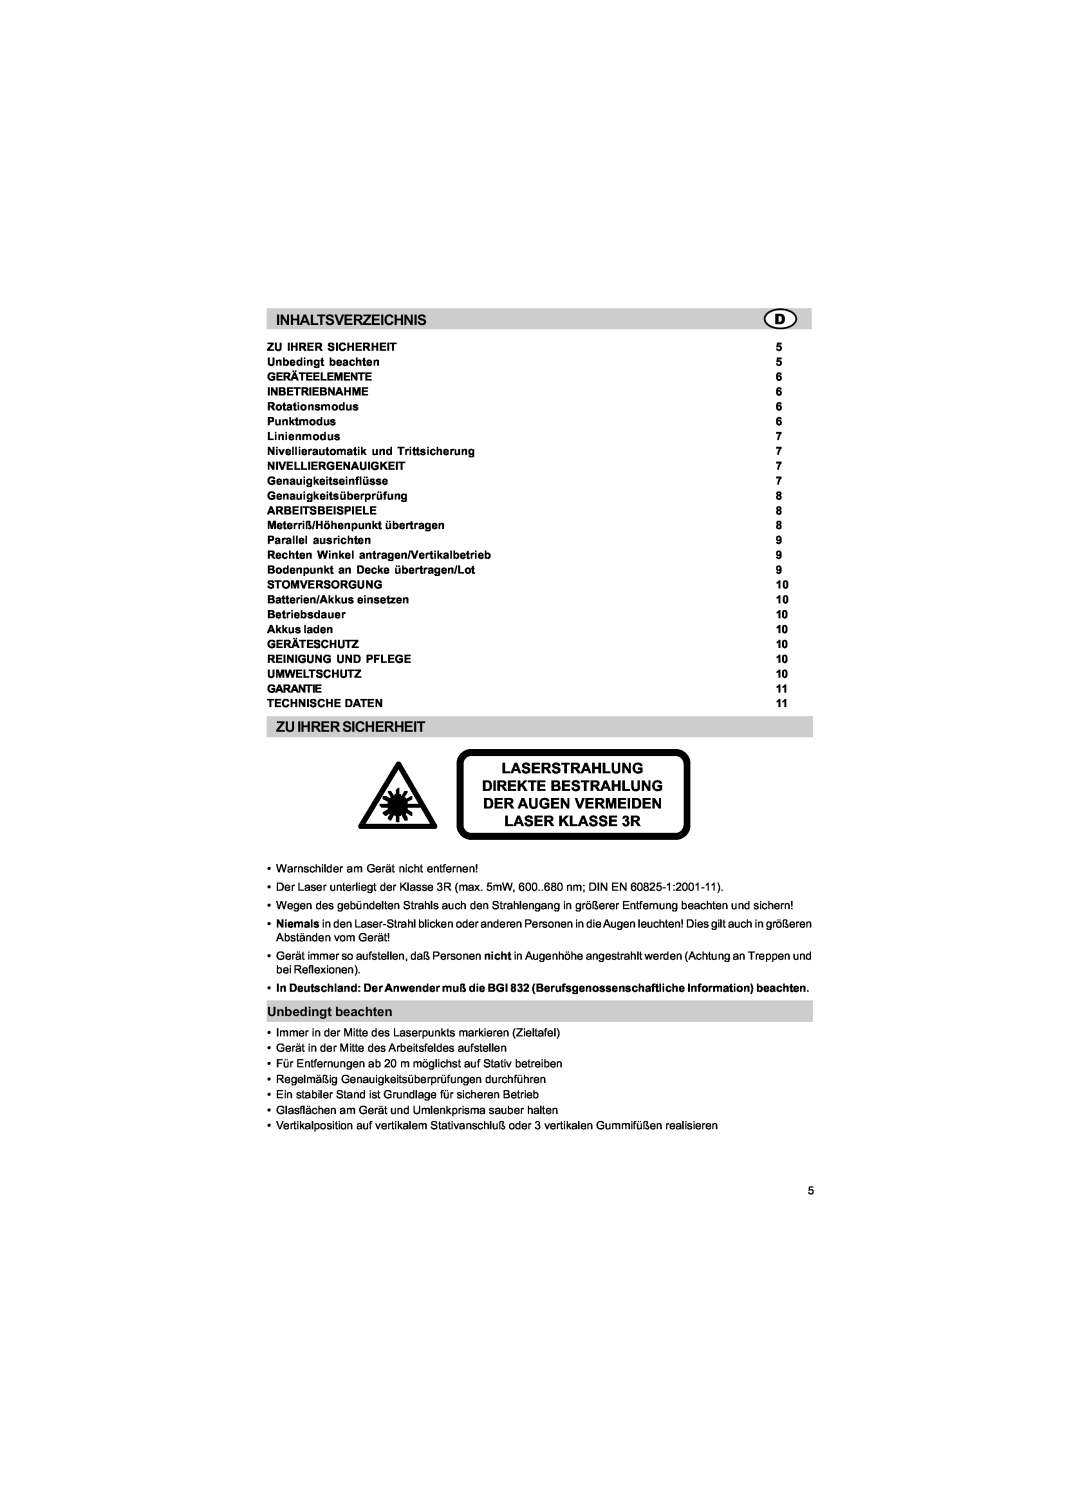 Trimble Outdoors HV301 Inhaltsverzeichnis, Zuihrersicherheit, Laserstrahlung, Direkte Bestrahlung, Der Augen Vermeiden 